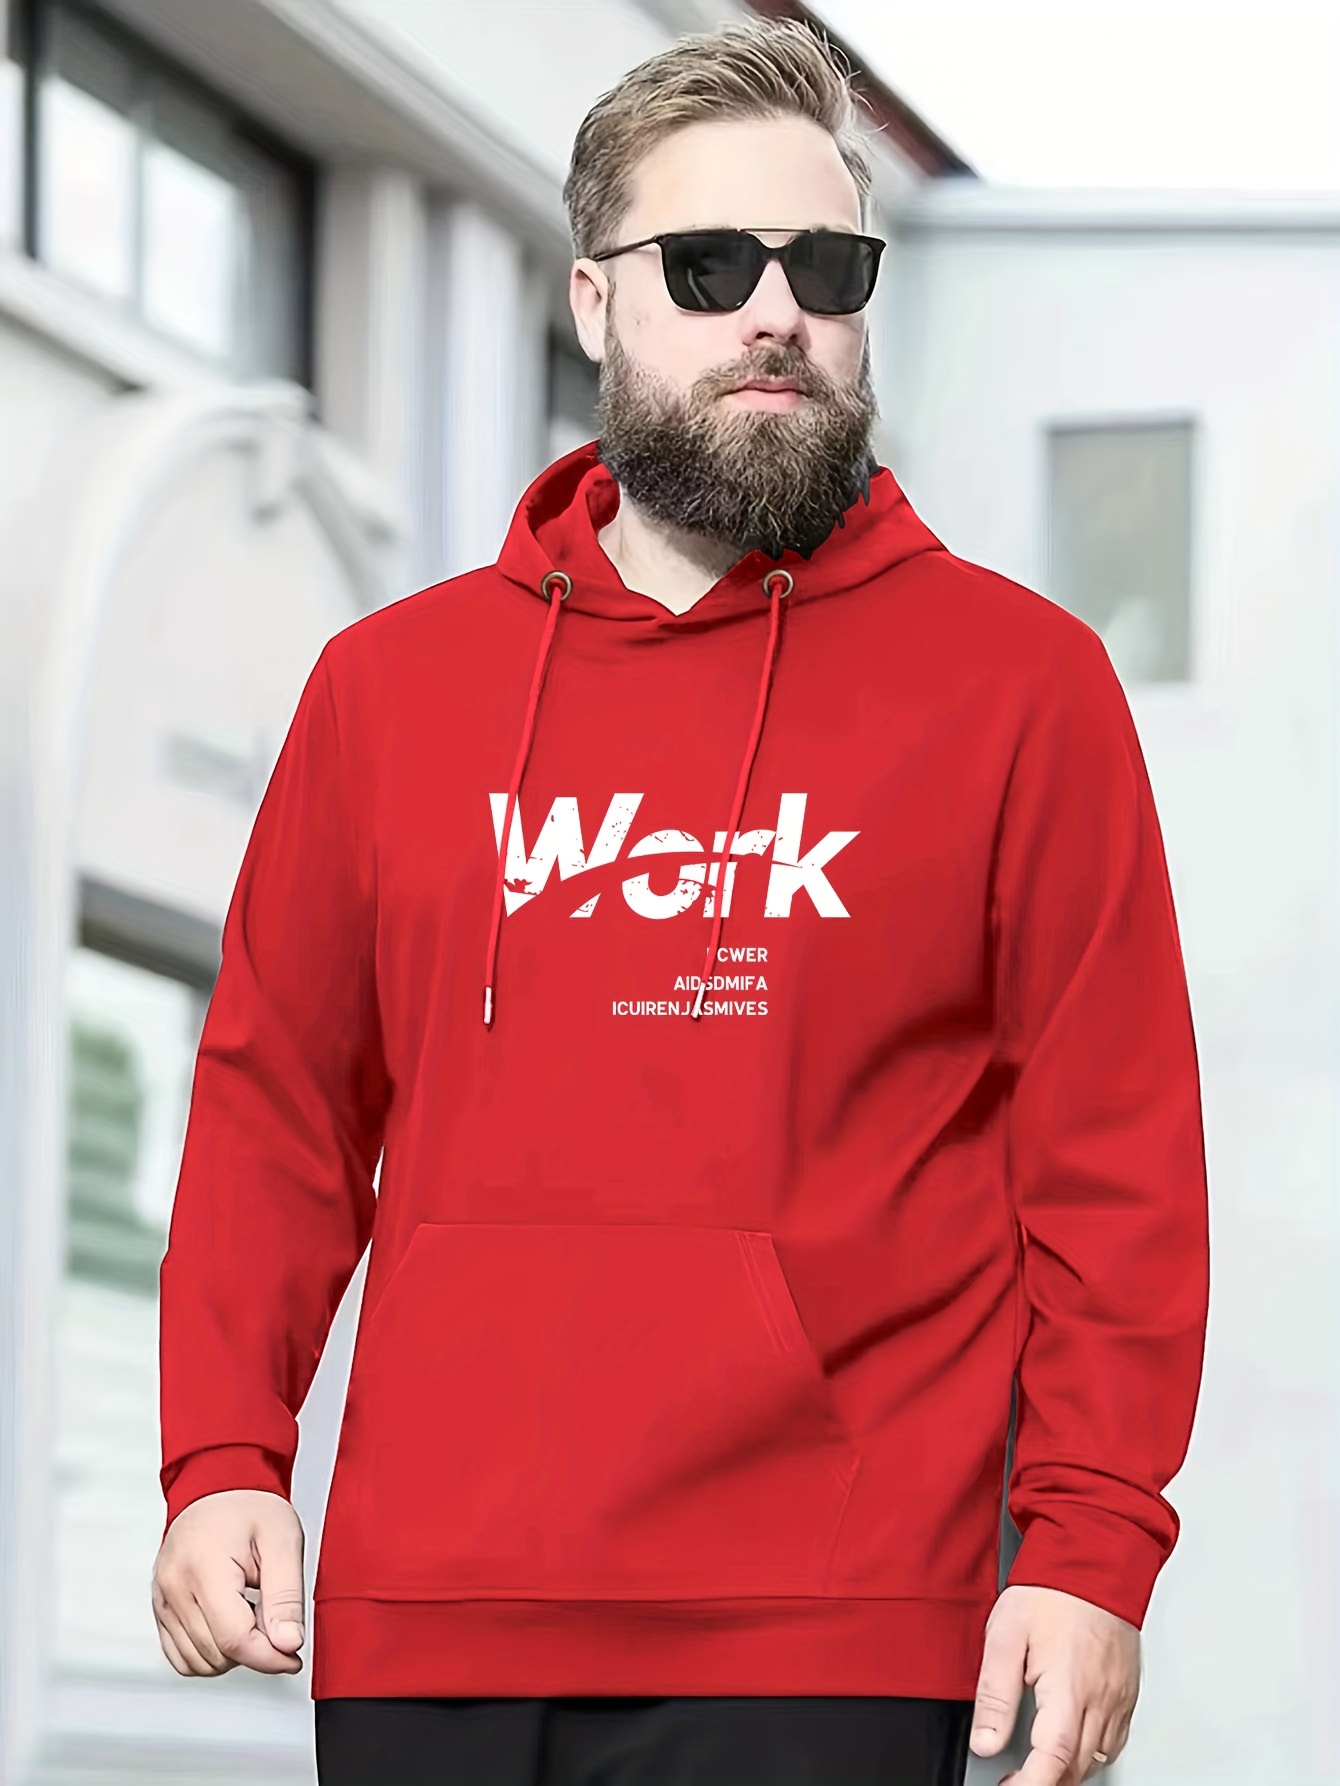 Men's Work Hoodies & Sweatshirts